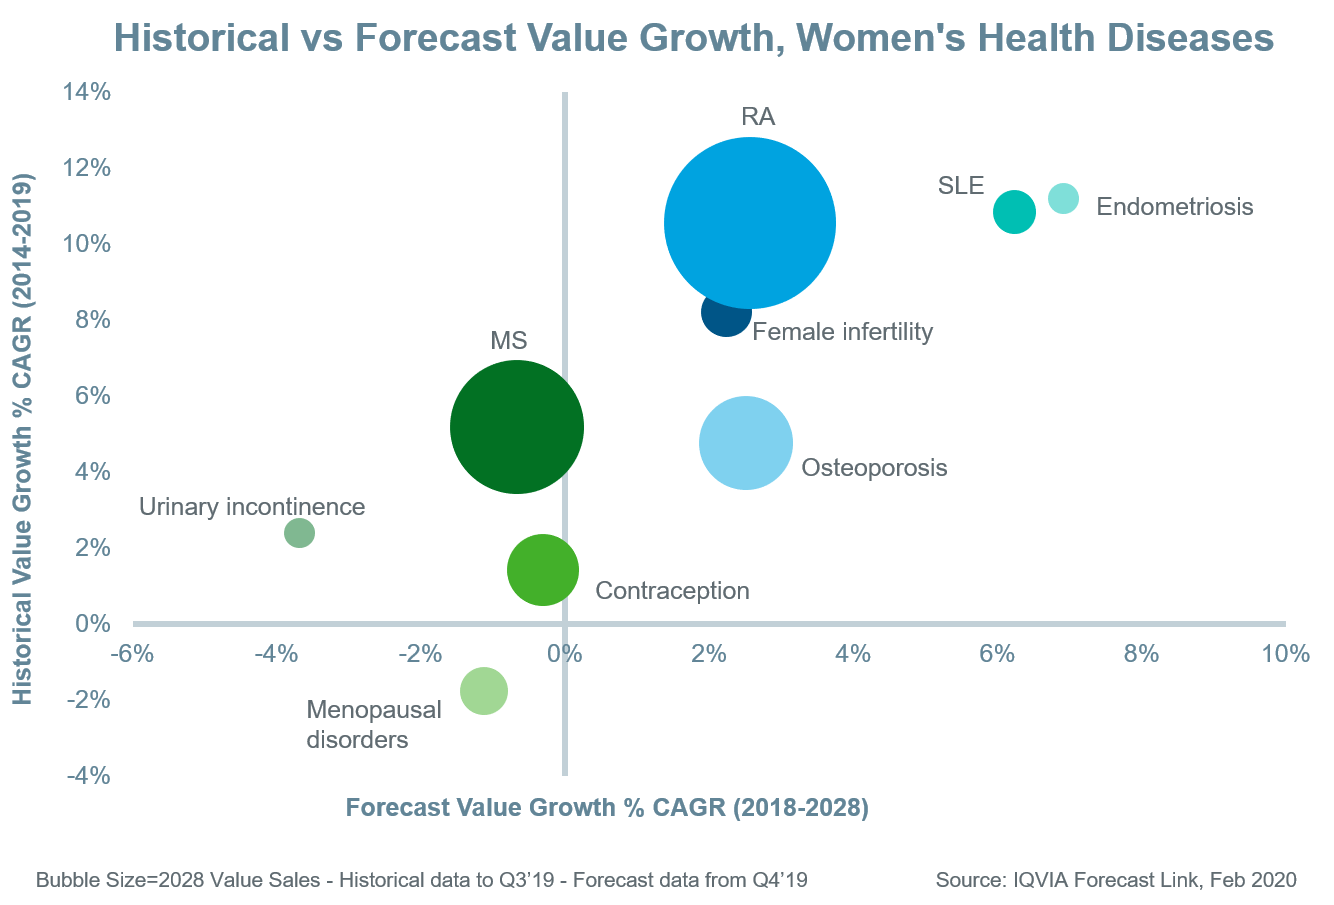 Women's Health Diseases Historical vs Forecast Value